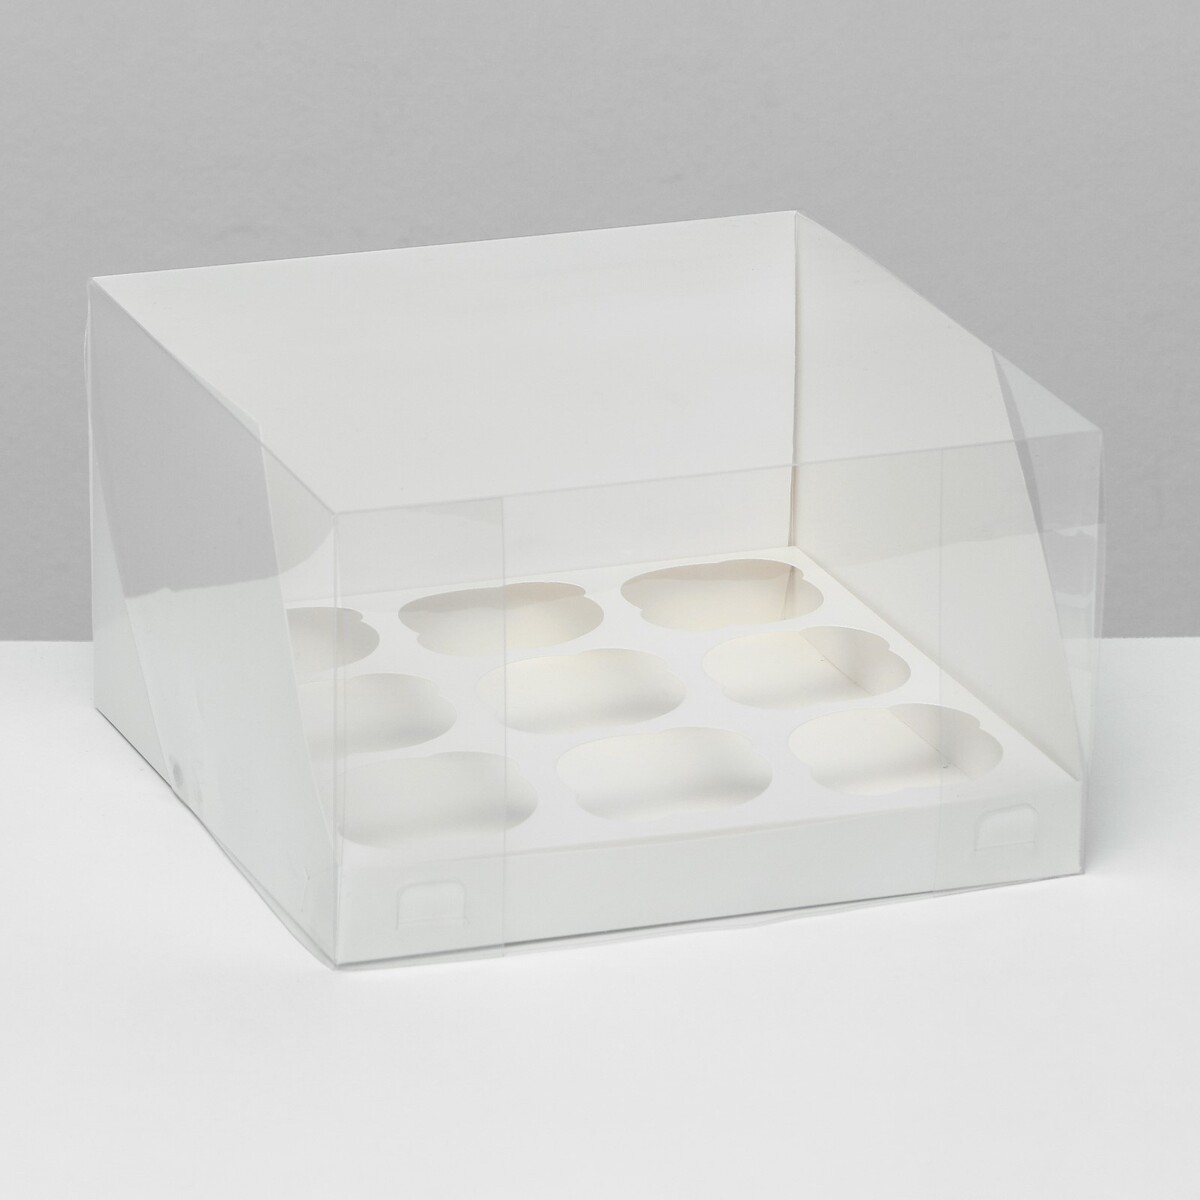 Кондитерская складная коробка для 9 капкейков белая 23,5 x 23 x 14 см кондитерская складная коробка для 9 капкейков крафт 23 5 x 23 x 14